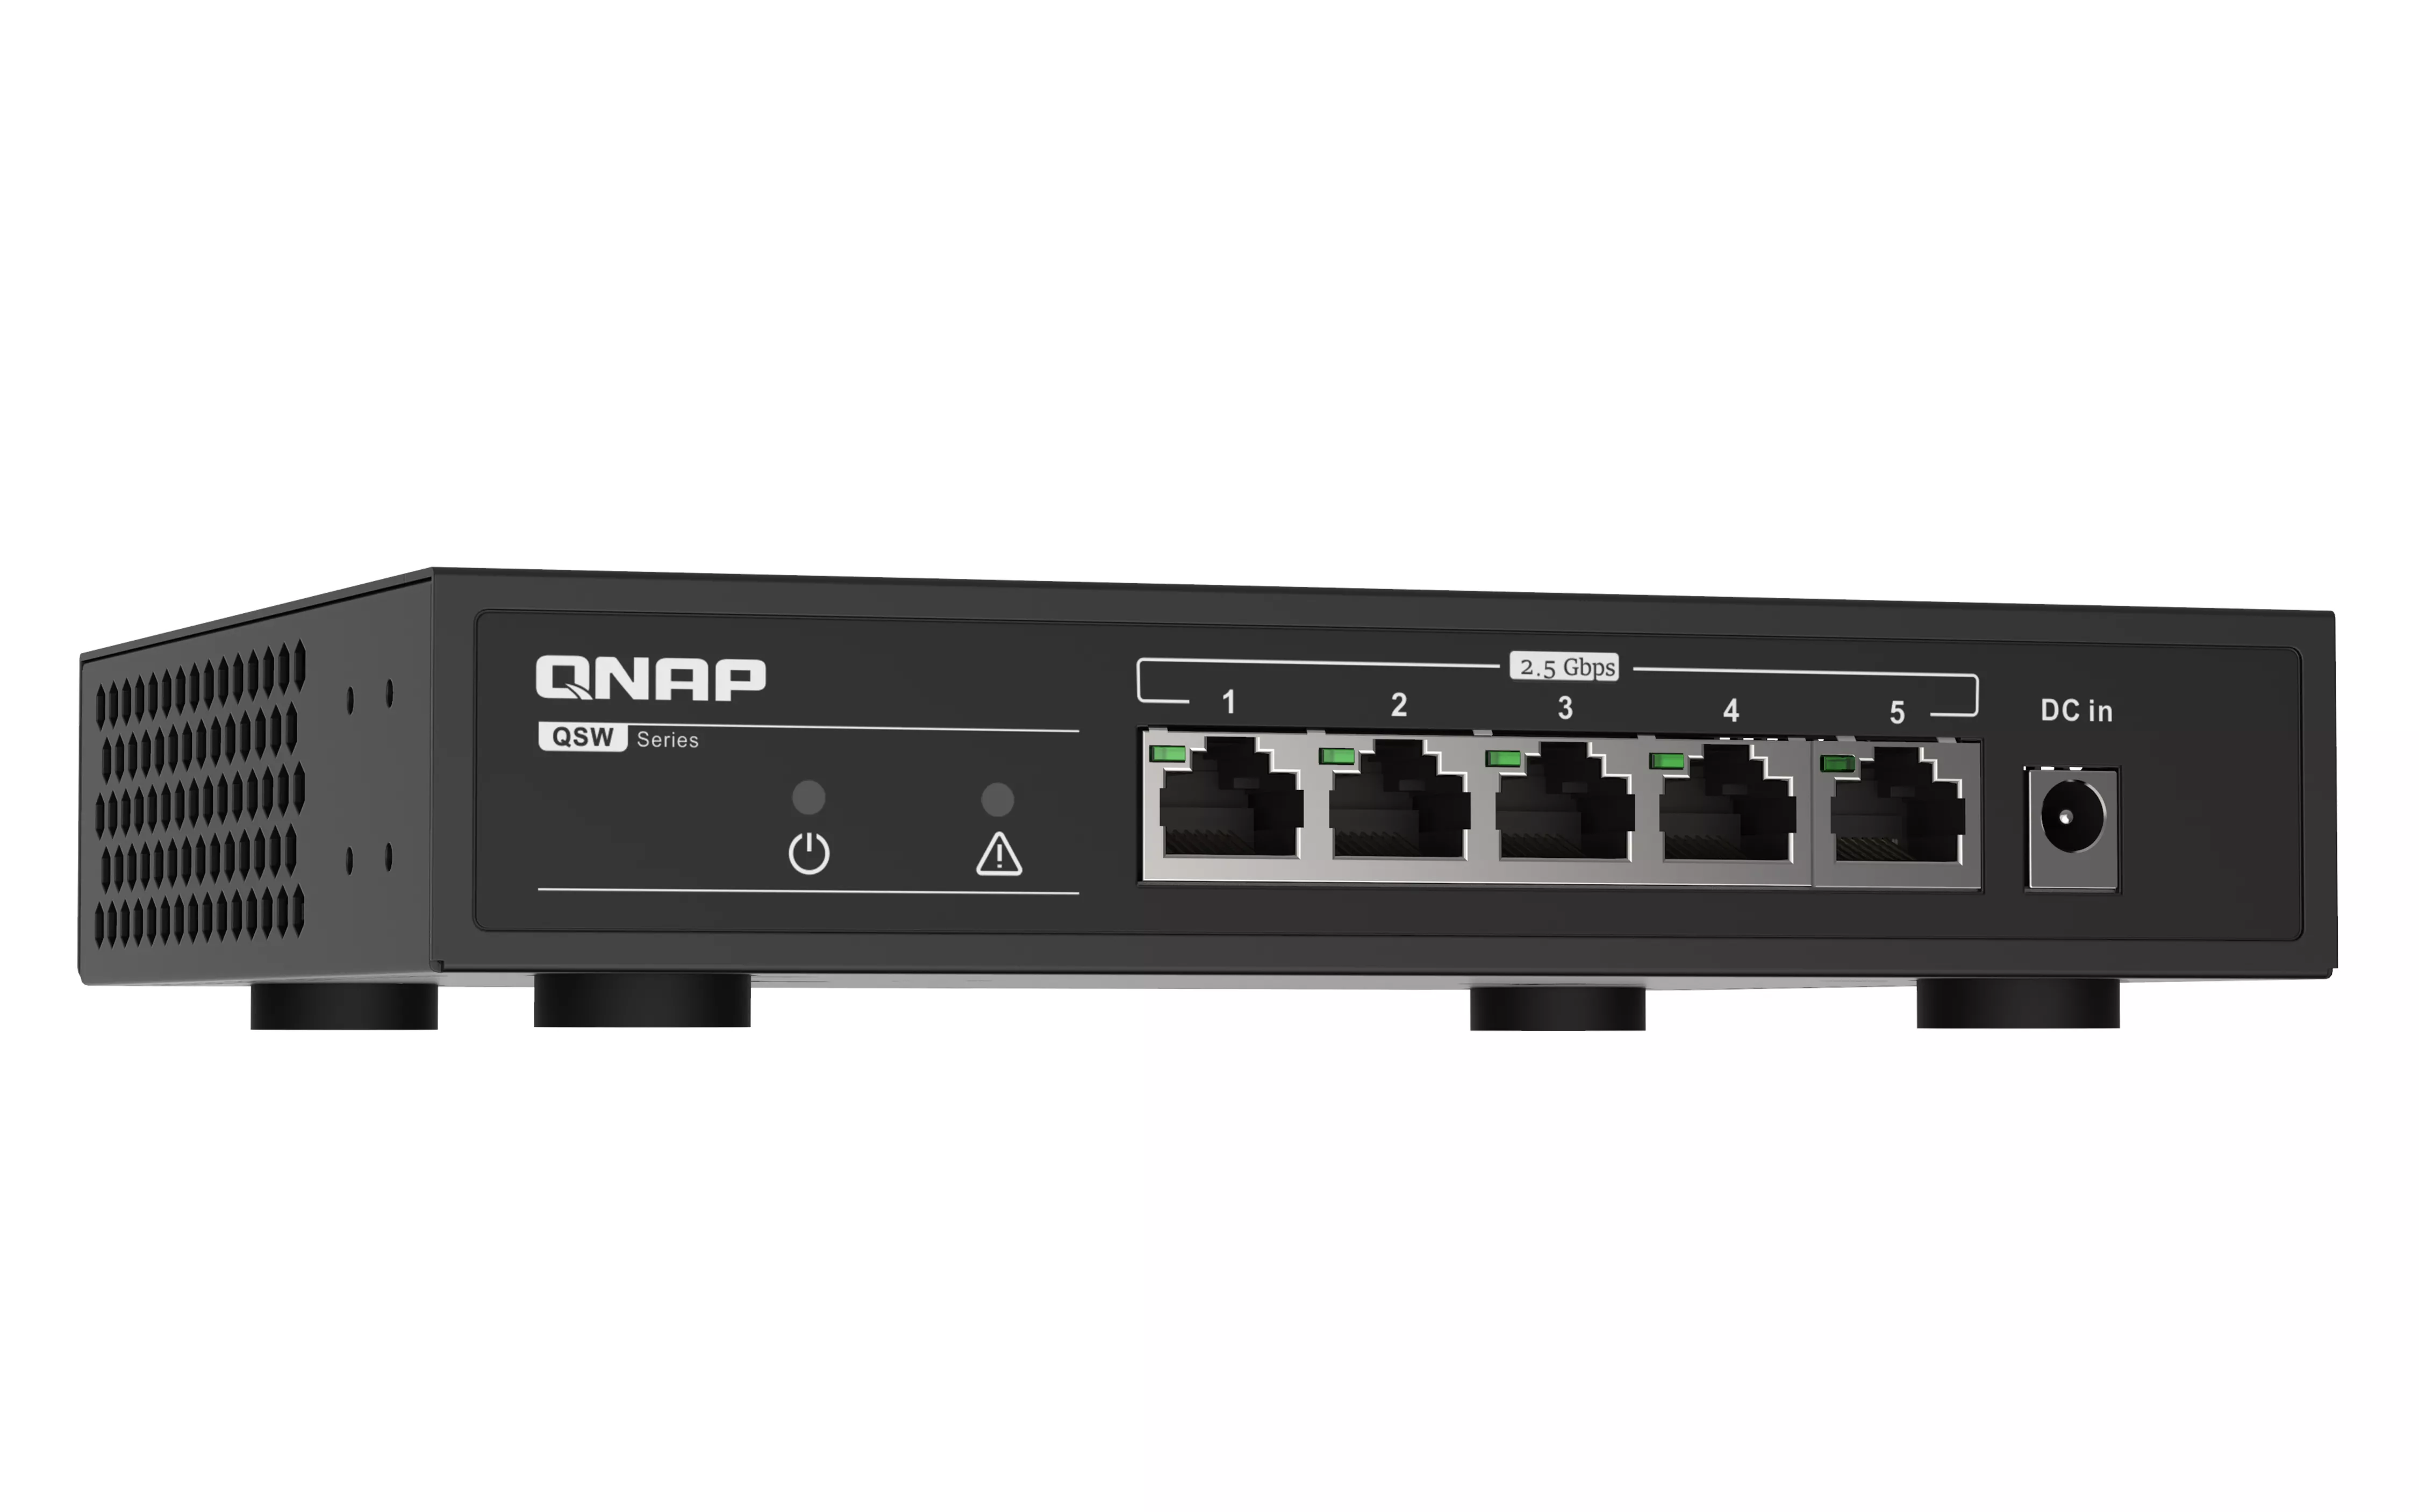 Achat QNAP QSW-1105-5T 5 port 2.5Gbps auto negotiation 2 sur hello RSE - visuel 3